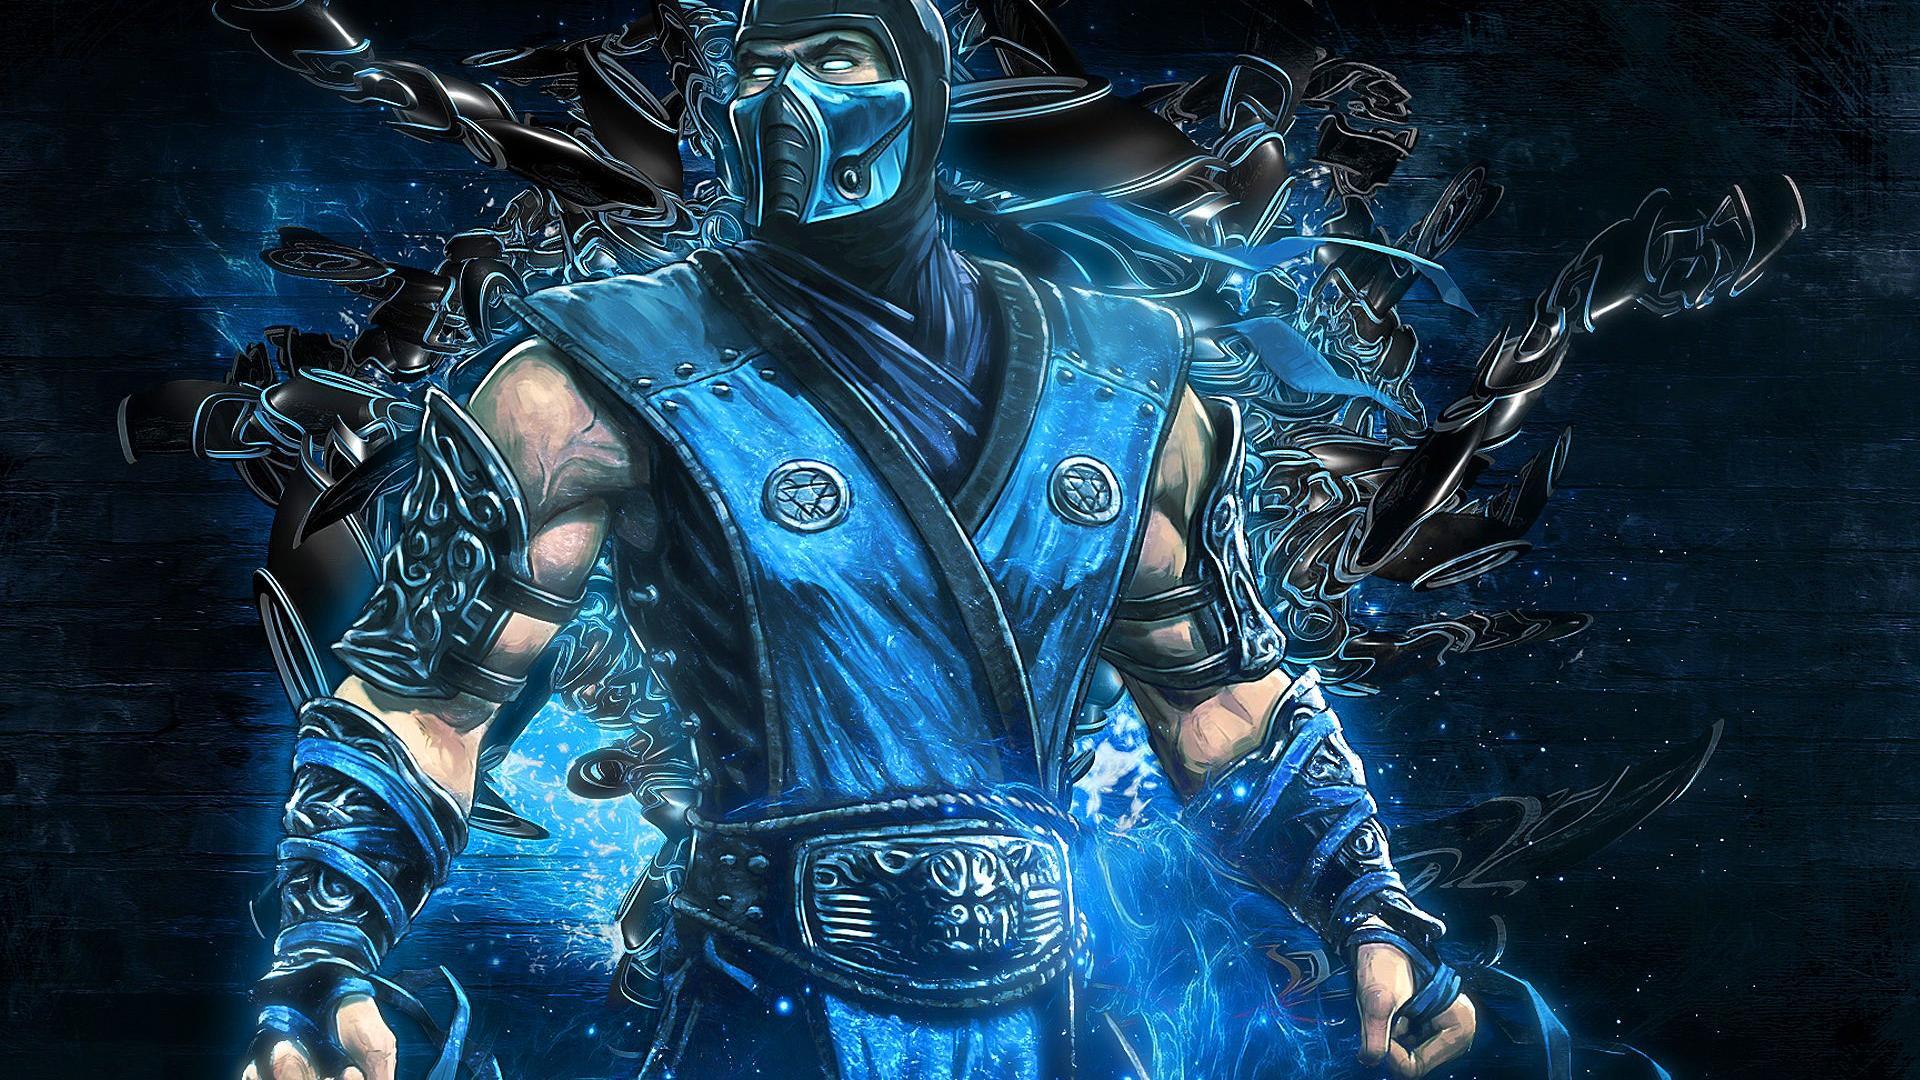 Mortal Kombat Wallpapers Top Những Hình Ảnh Đẹp